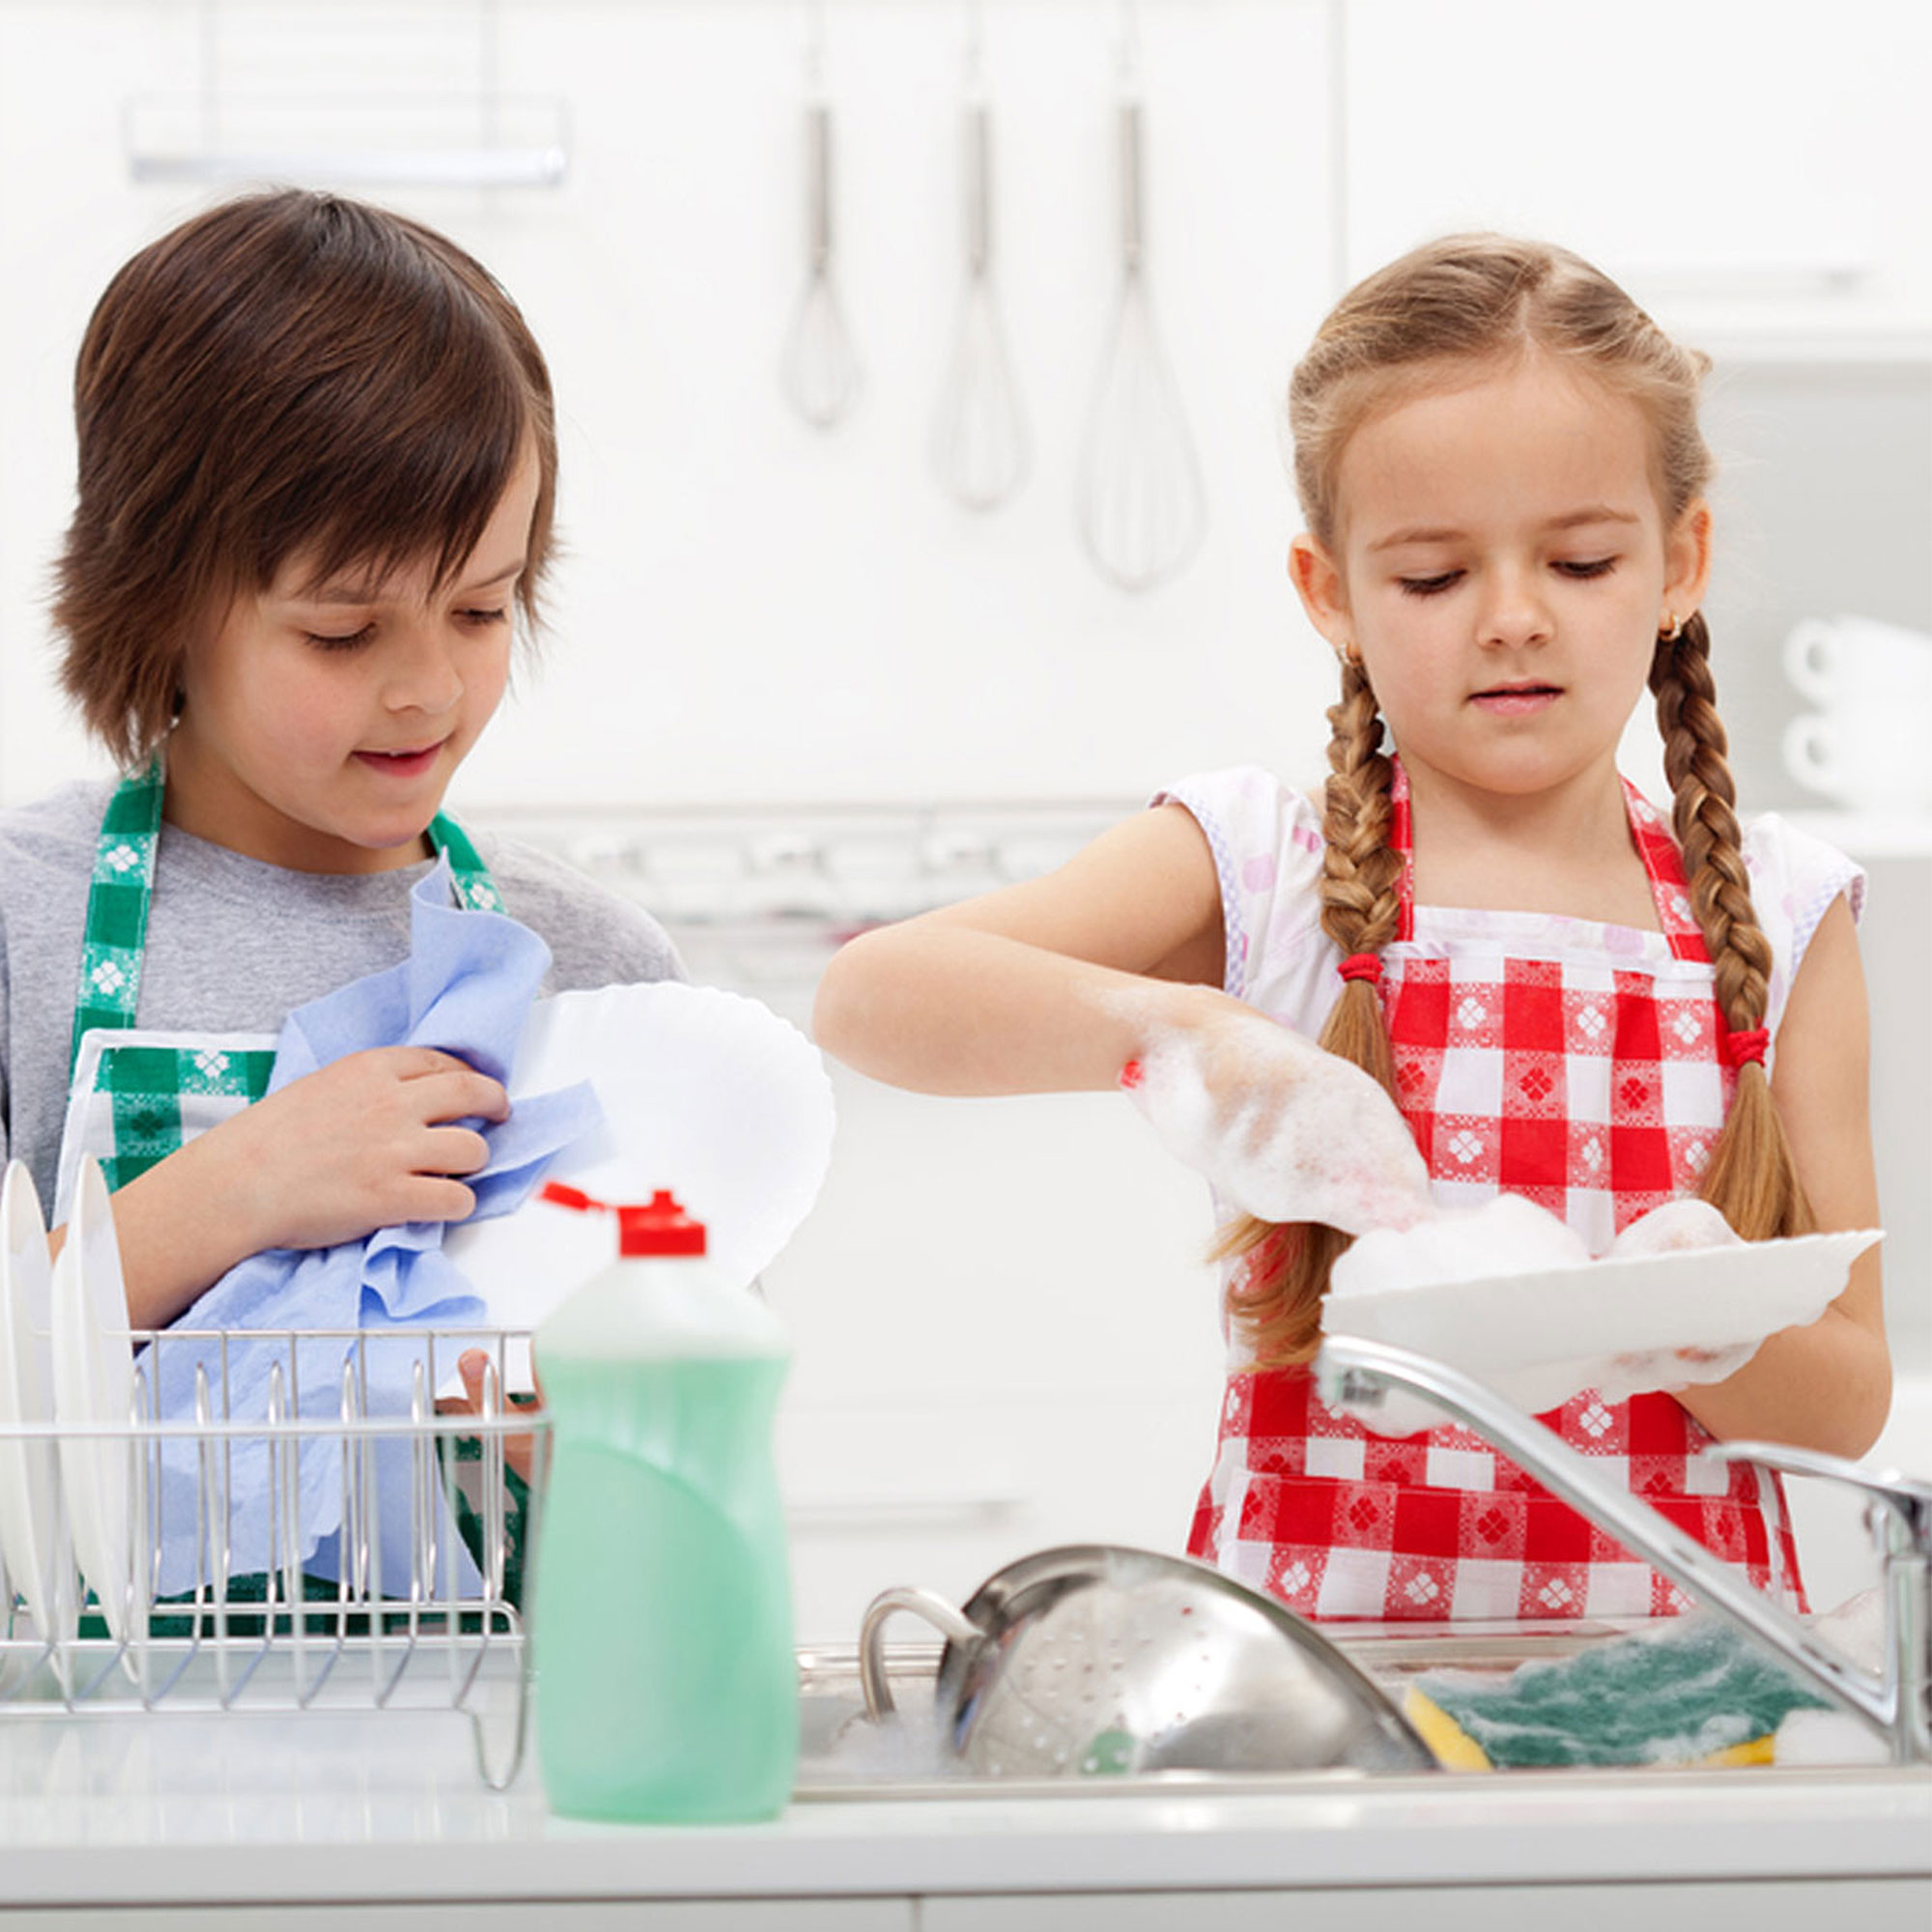 Trabalho feito por crianças dentro de casa é considerado trabalho infantil?